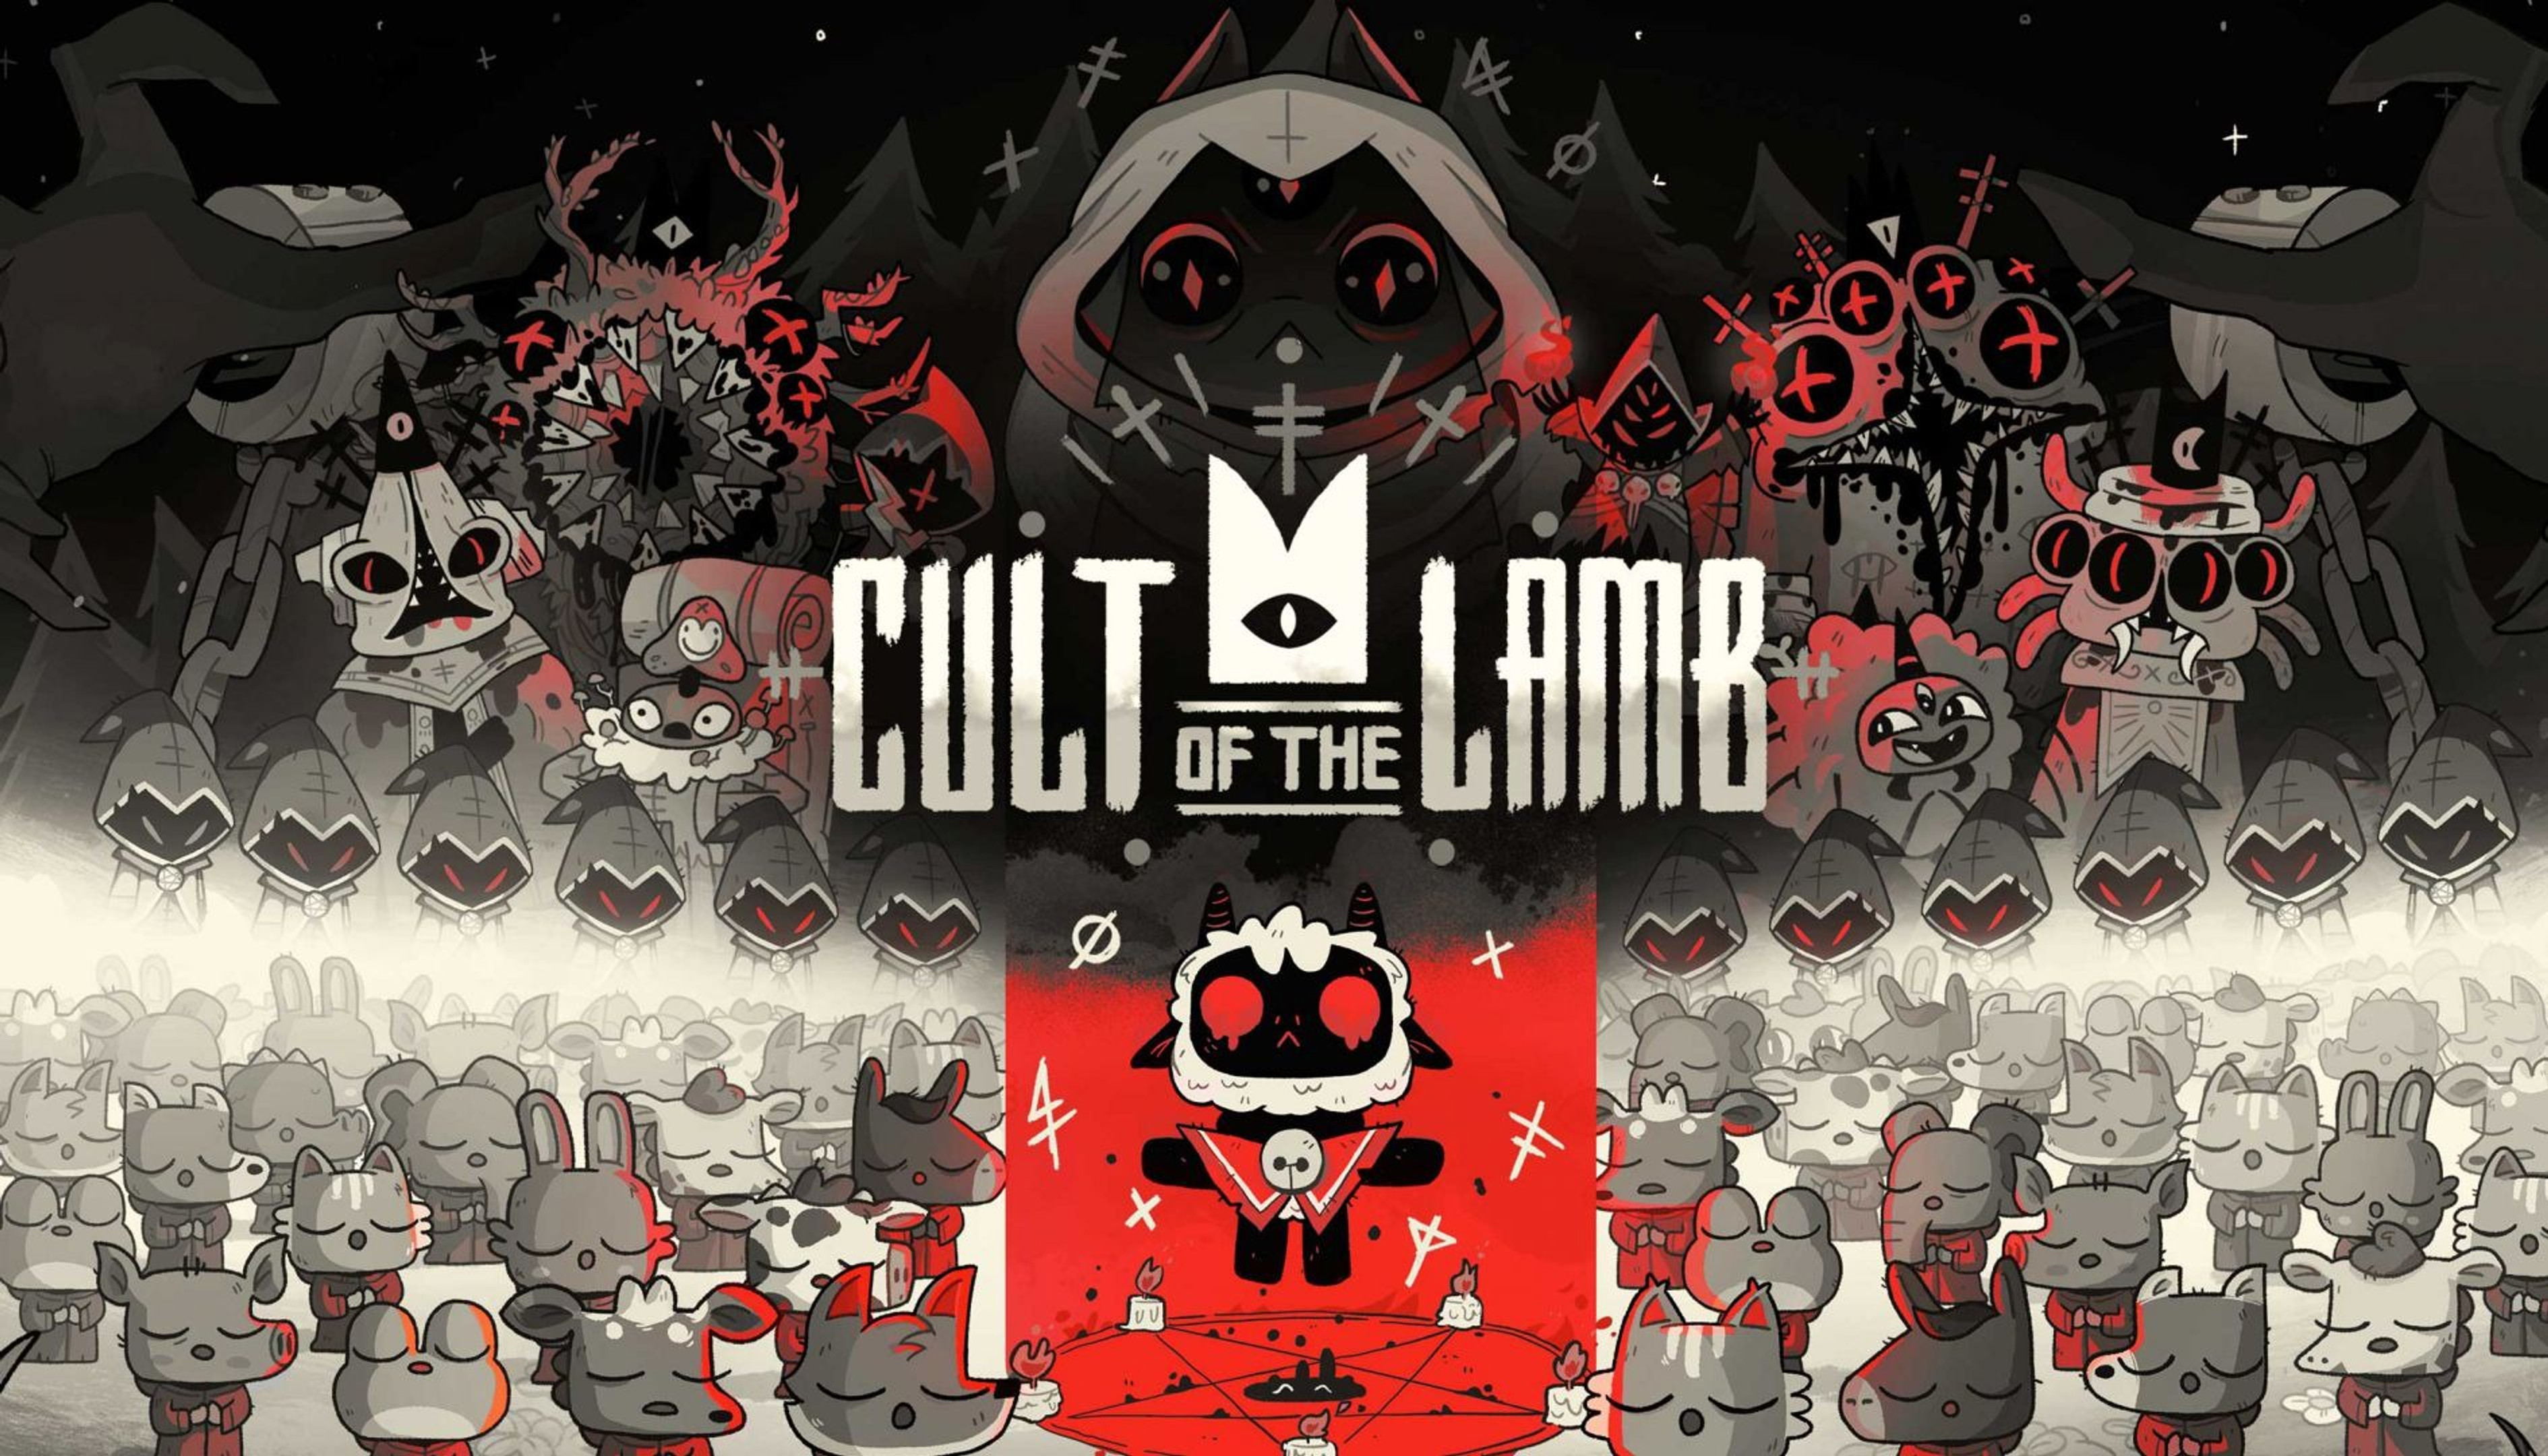 cult-of-the-lamb